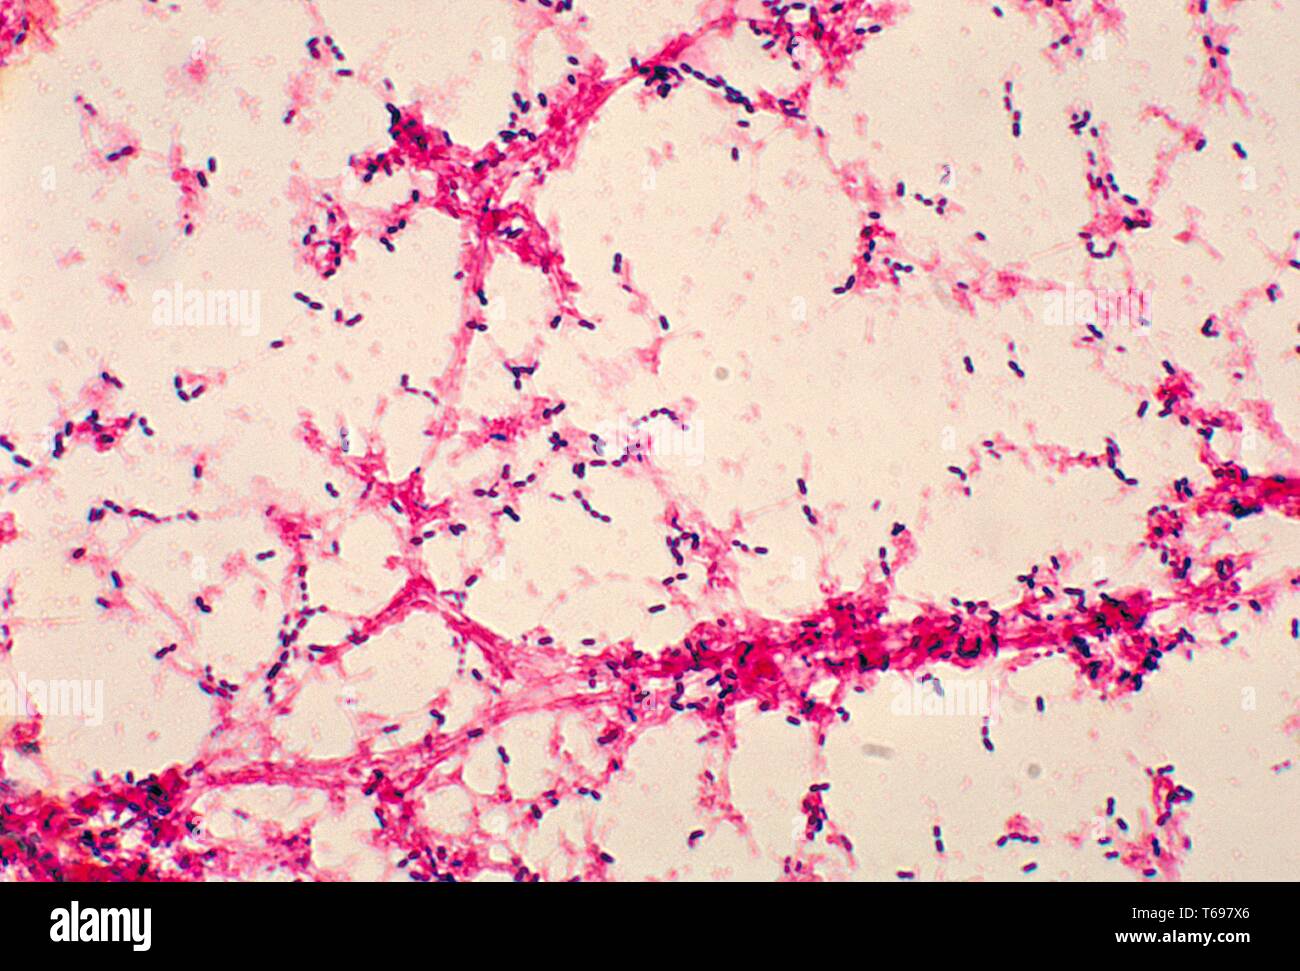 Dies ist ein photomicrograph von Streptococcus pneumoniae Bakterien aus einem Blut Kultur, 1978 angebaut worden. Streptococcus pneumoniae, die Bakterien verantwortlich für Pneumokokken Meningitis, ist sehr verbreitet, und in der Regel leben in der Rückseite der Nase und des Rachens oder der oberen Atemwege. Bild mit freundlicher Genehmigung von CDC/Dr. Mike Miller. Stockfoto